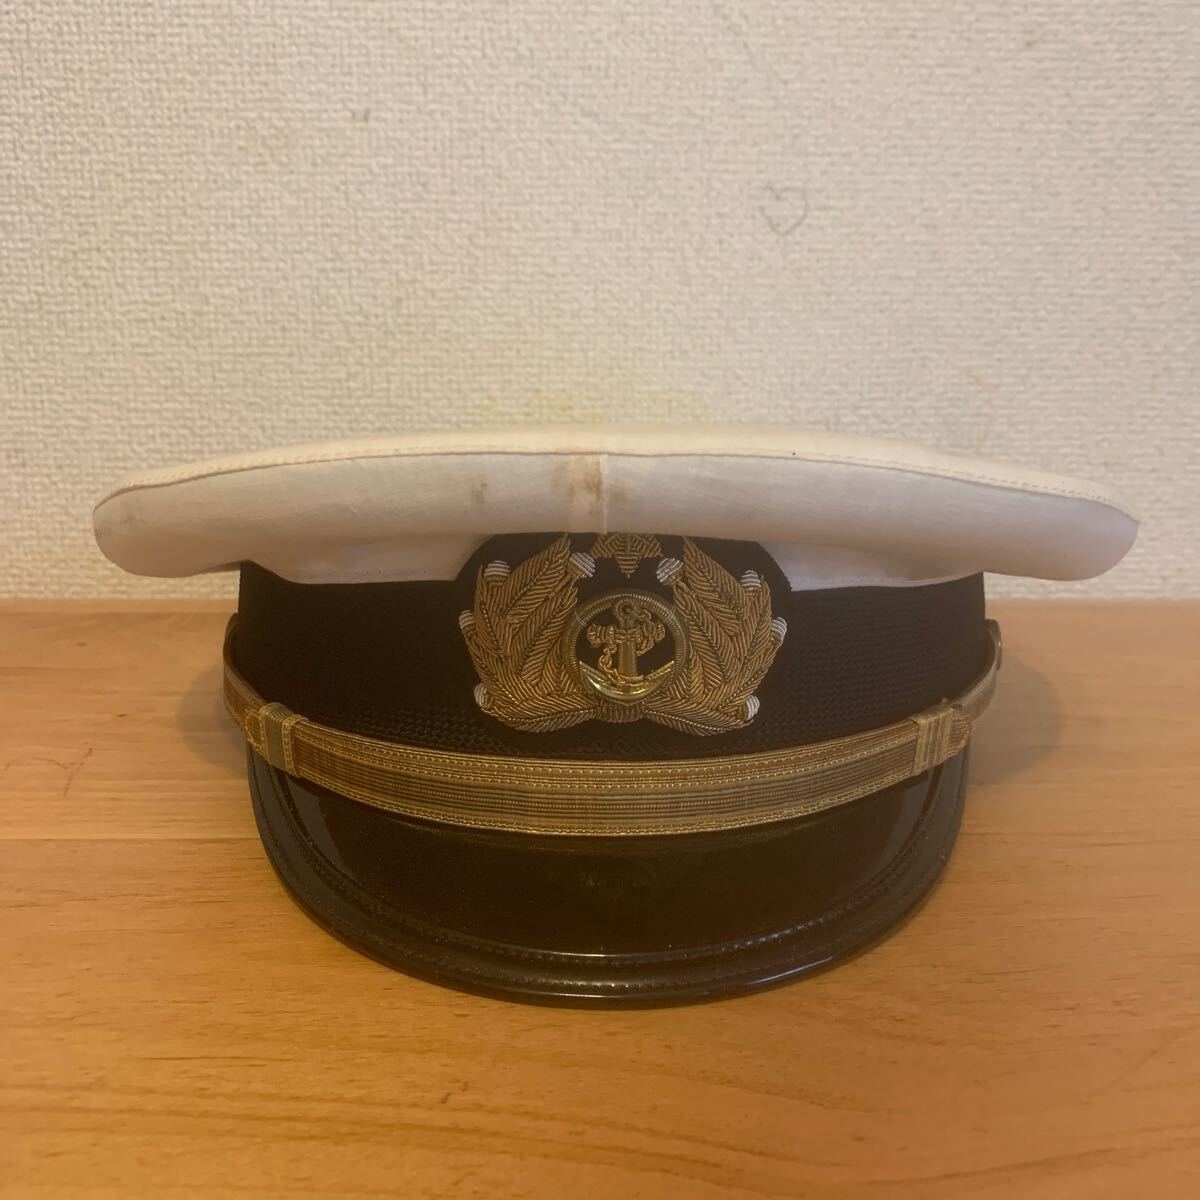 海上自衛隊 制帽 帽子 日本海軍 昭和の画像1